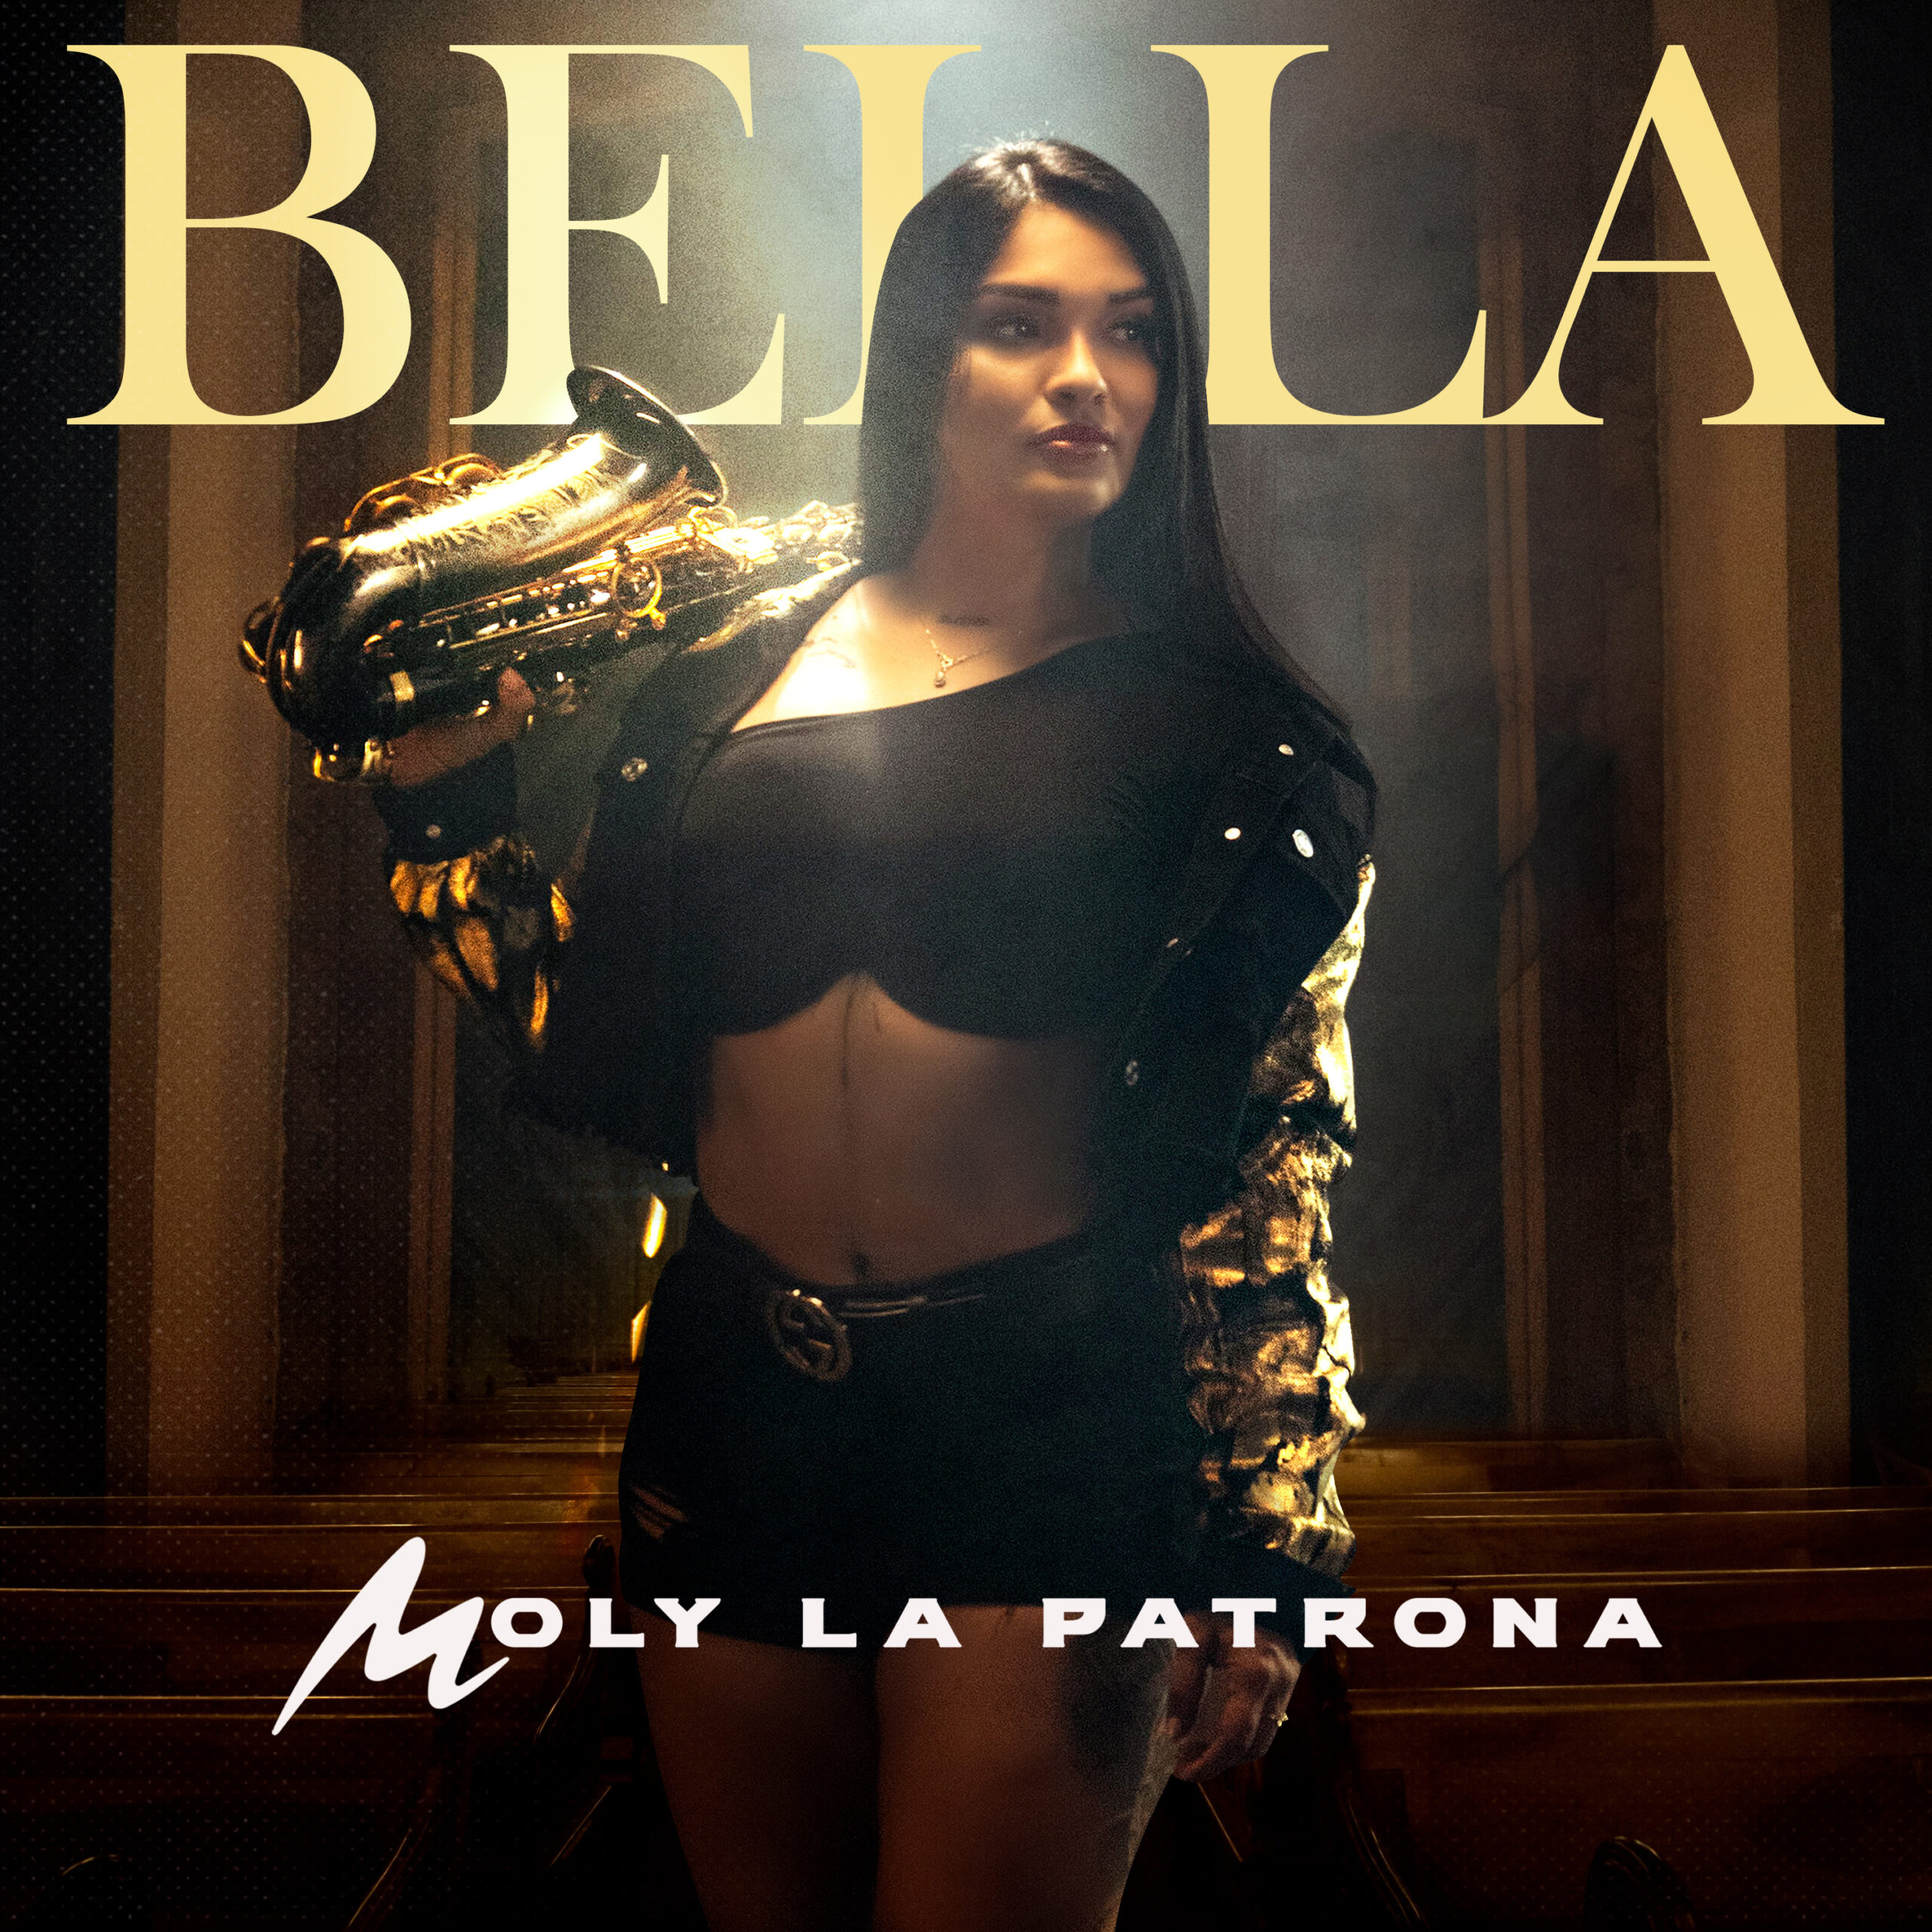 ‘Bella’ el nuevo sencillo con ritmos de cumbia que estrena Moly, La Patrona